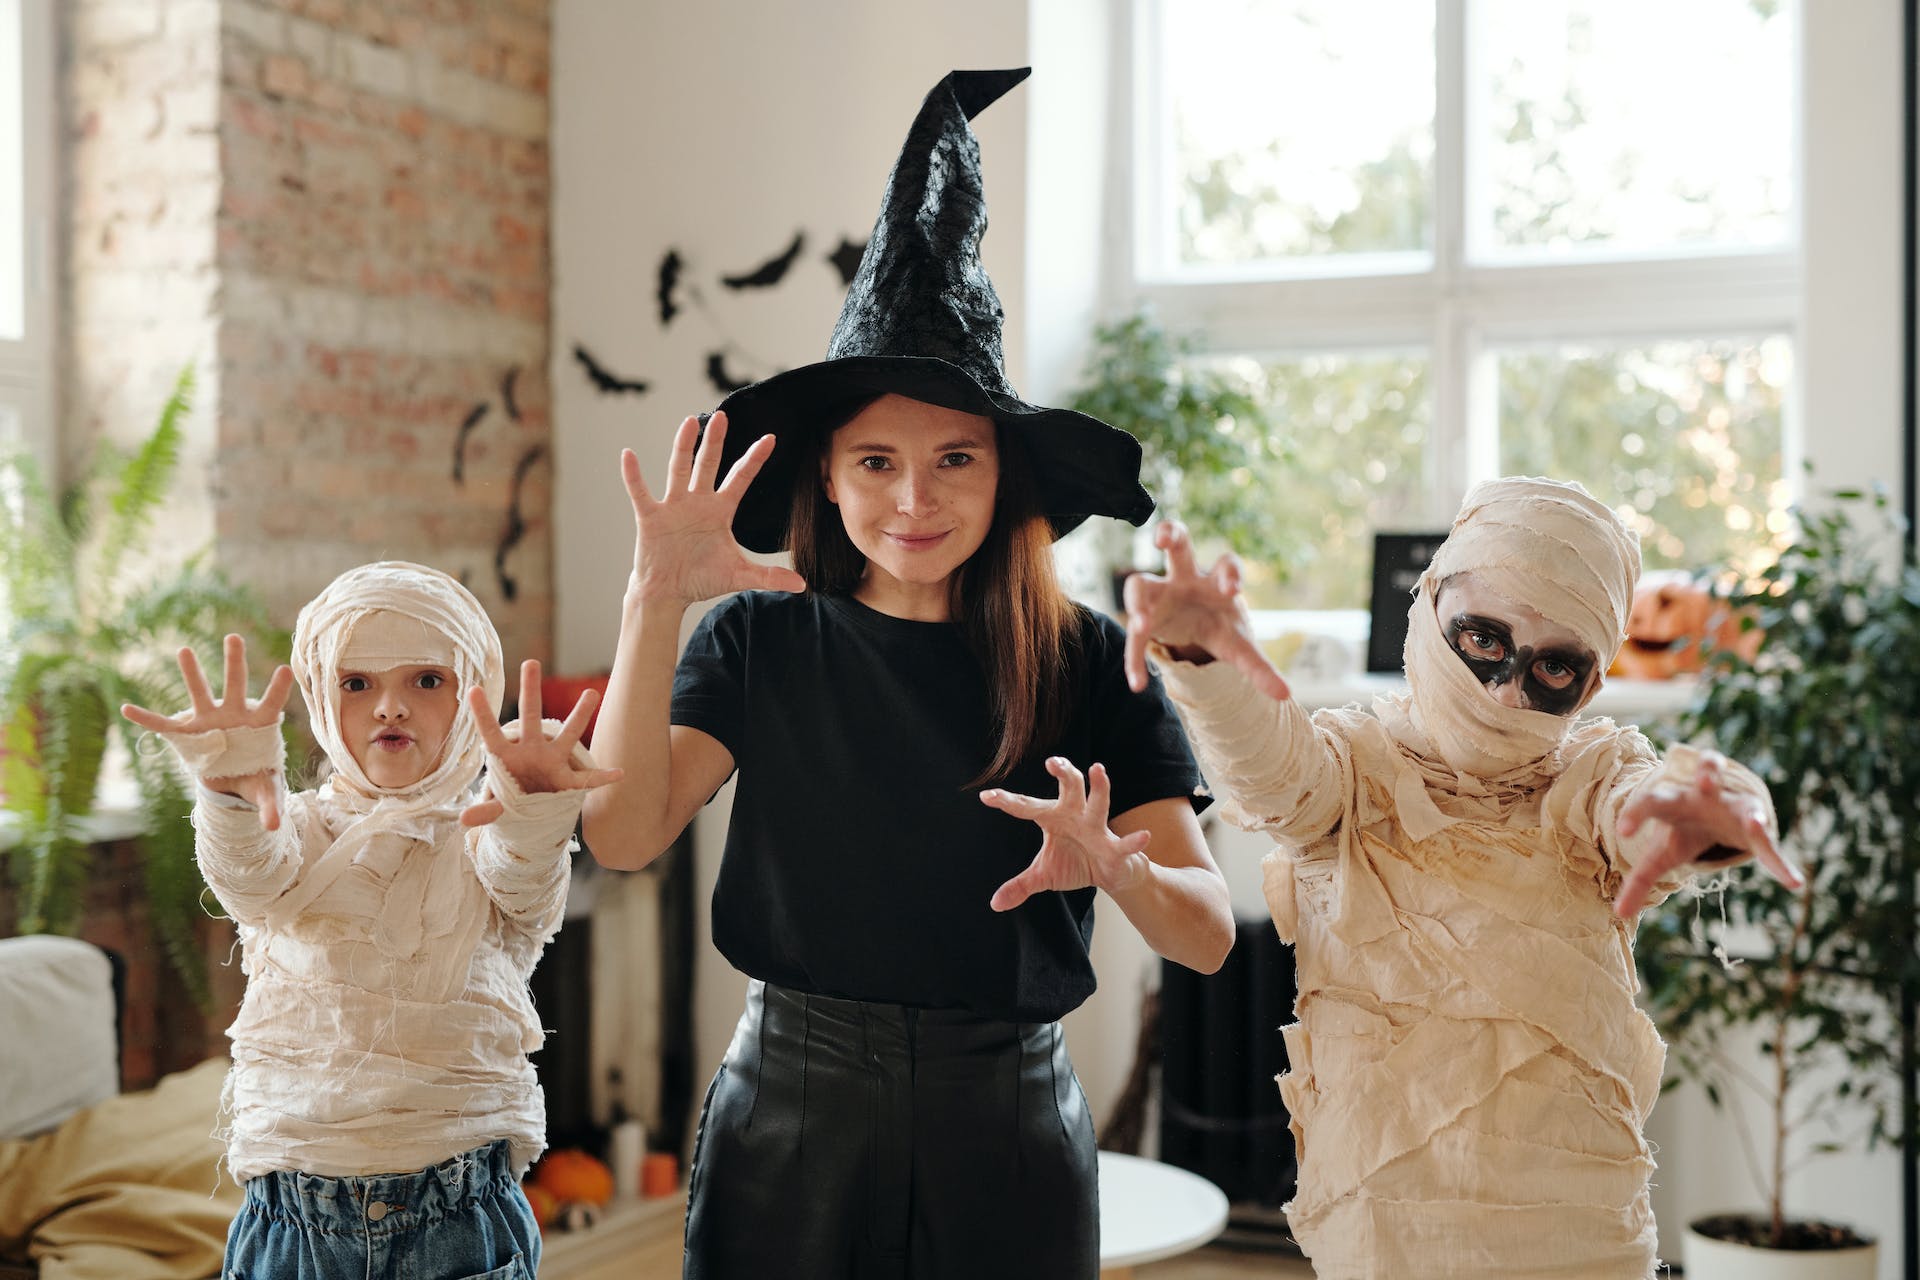 Como Potenciar El Aprendizaje Infantil En Torno A La Celebracion De Halloween